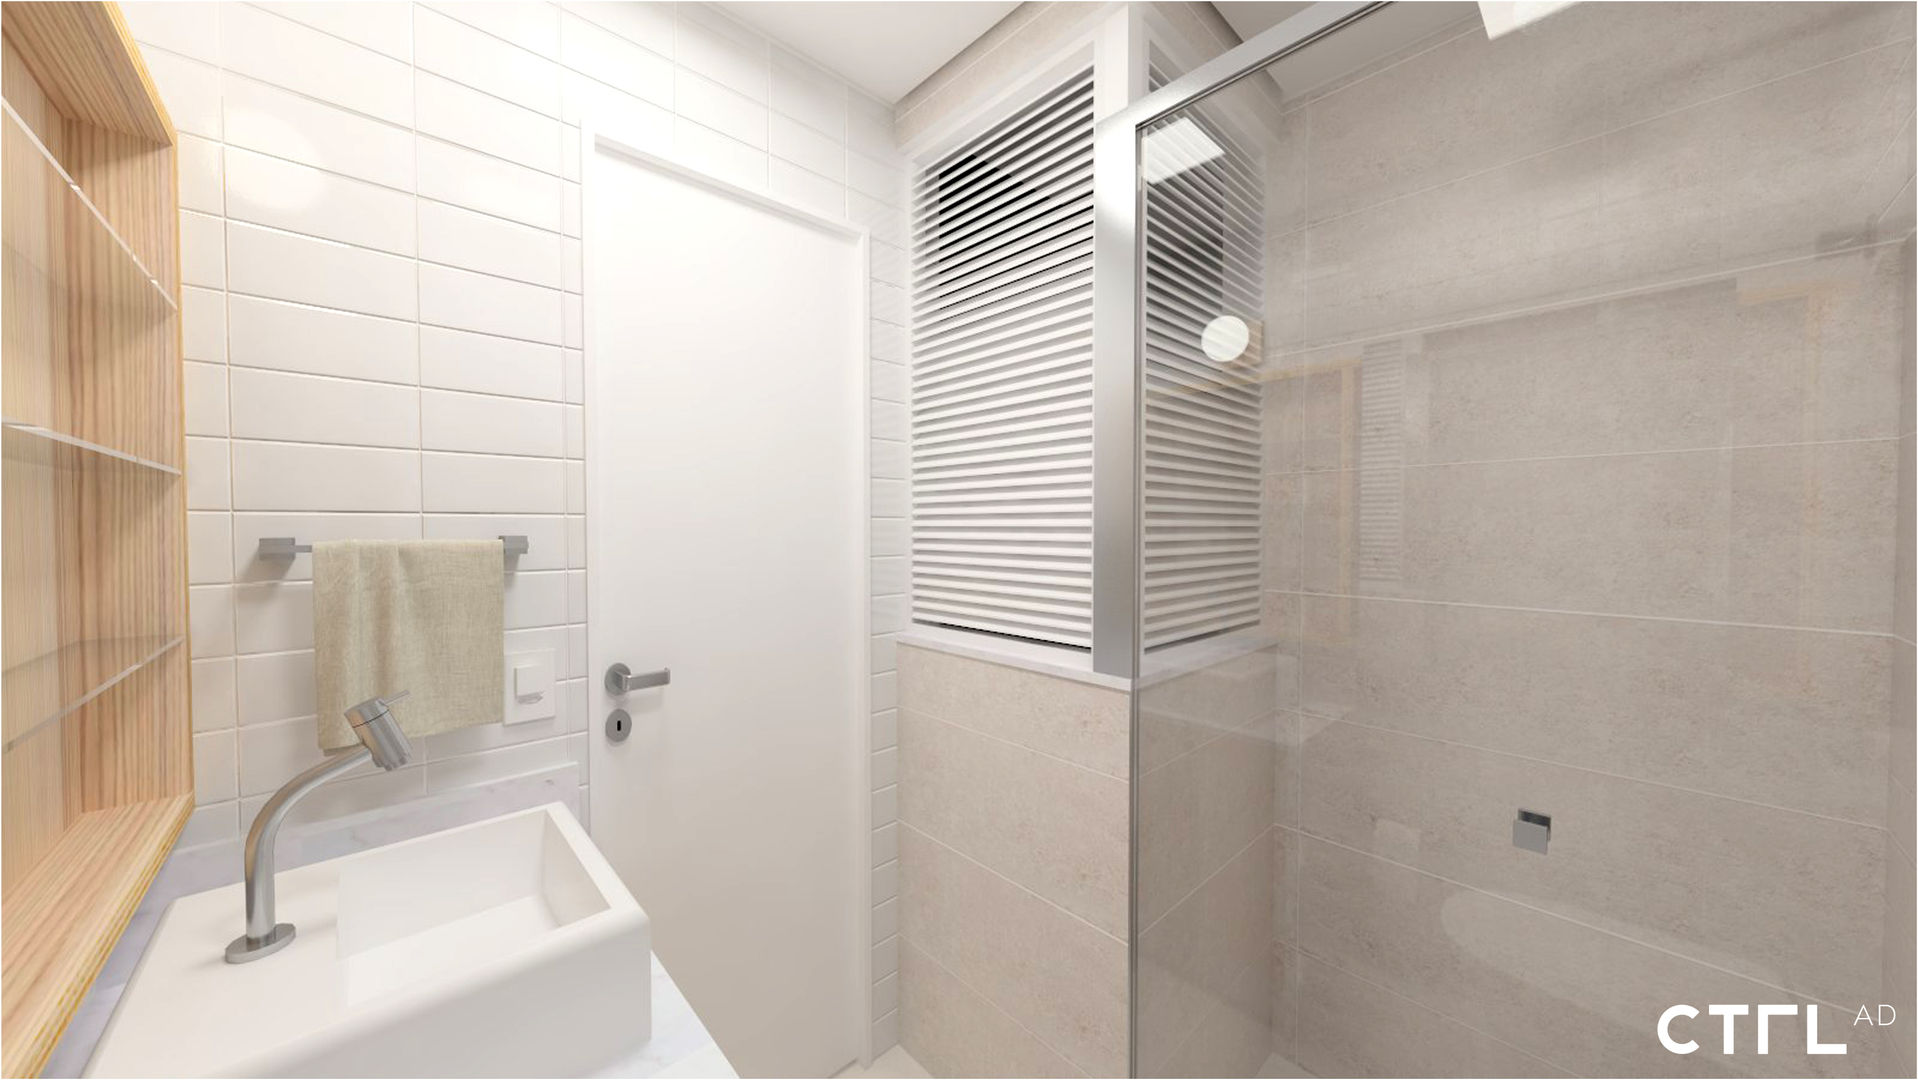 Área de Banho CTRL | interior design Banheiros modernos